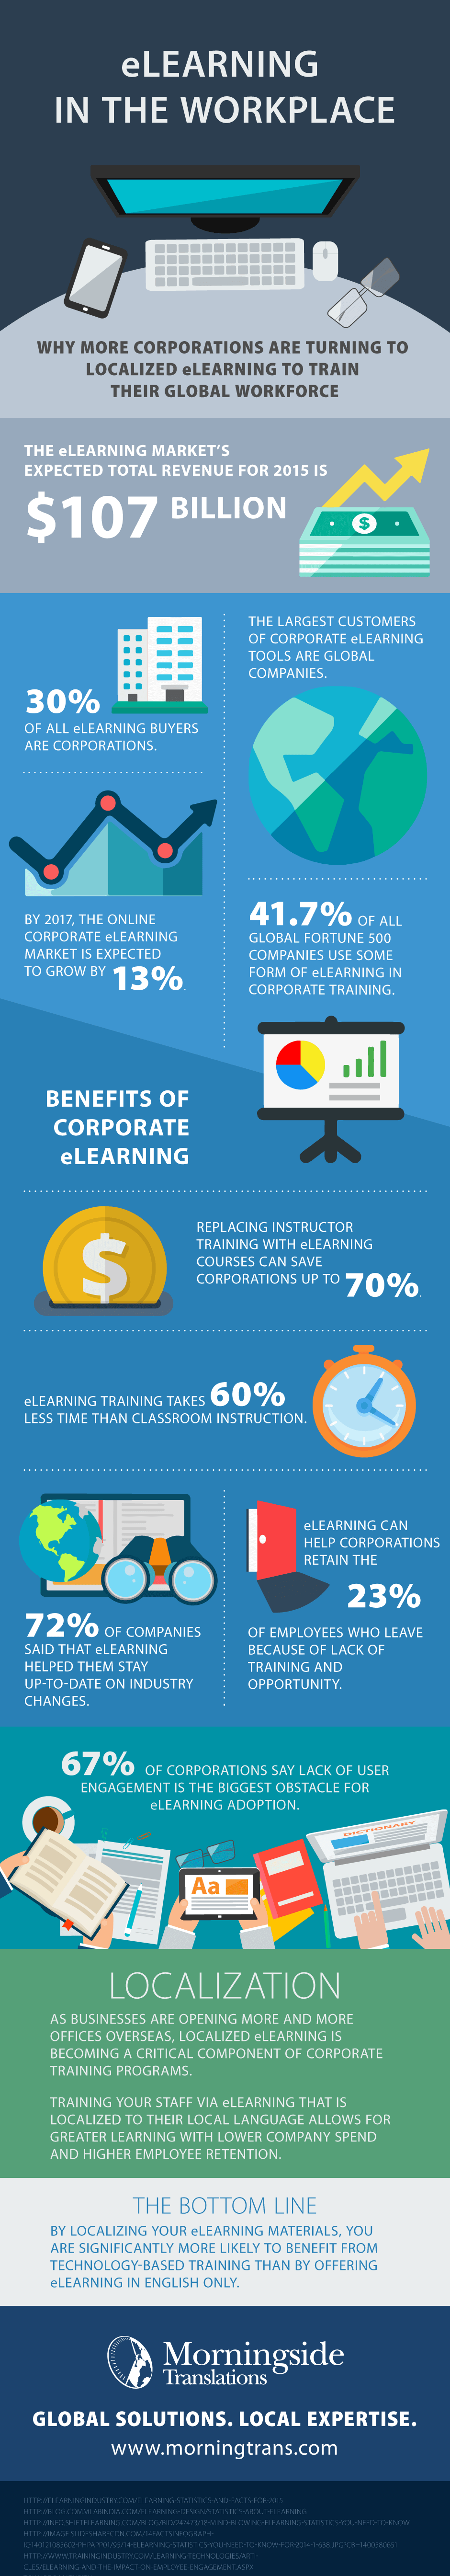 e-learning-Infographic-morningside